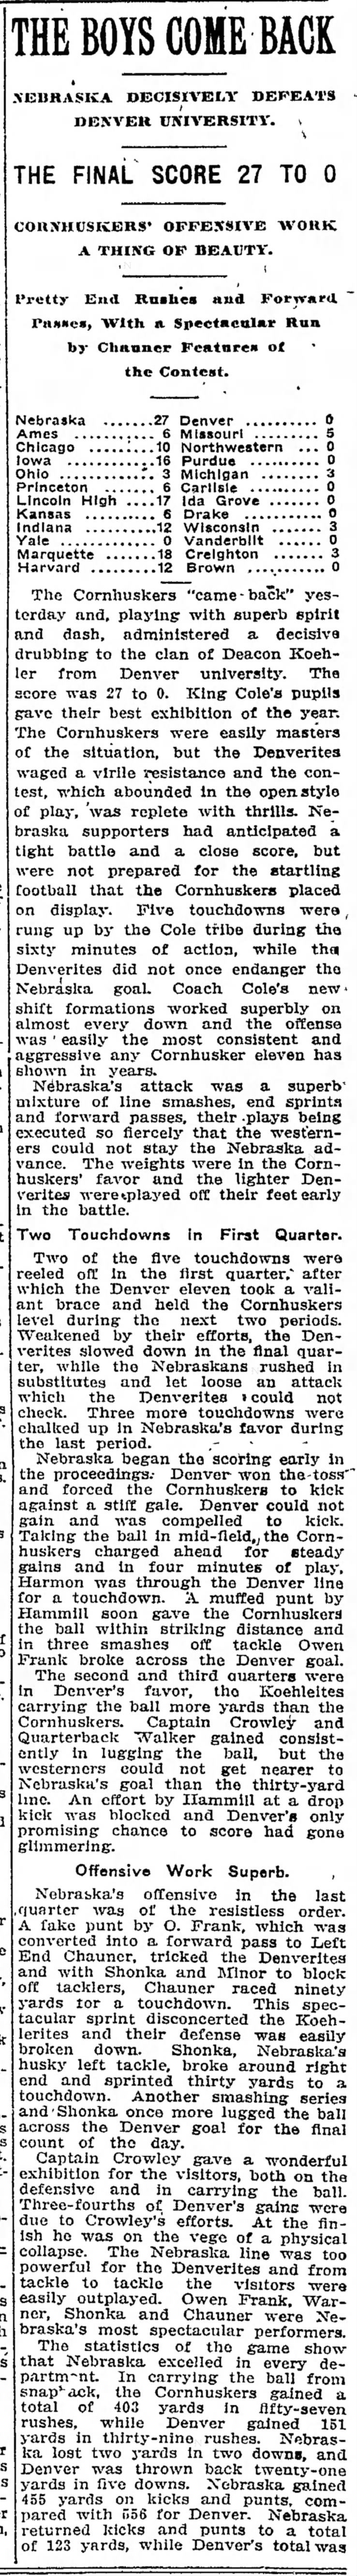 1910 Nebraska-Denver football, part 1